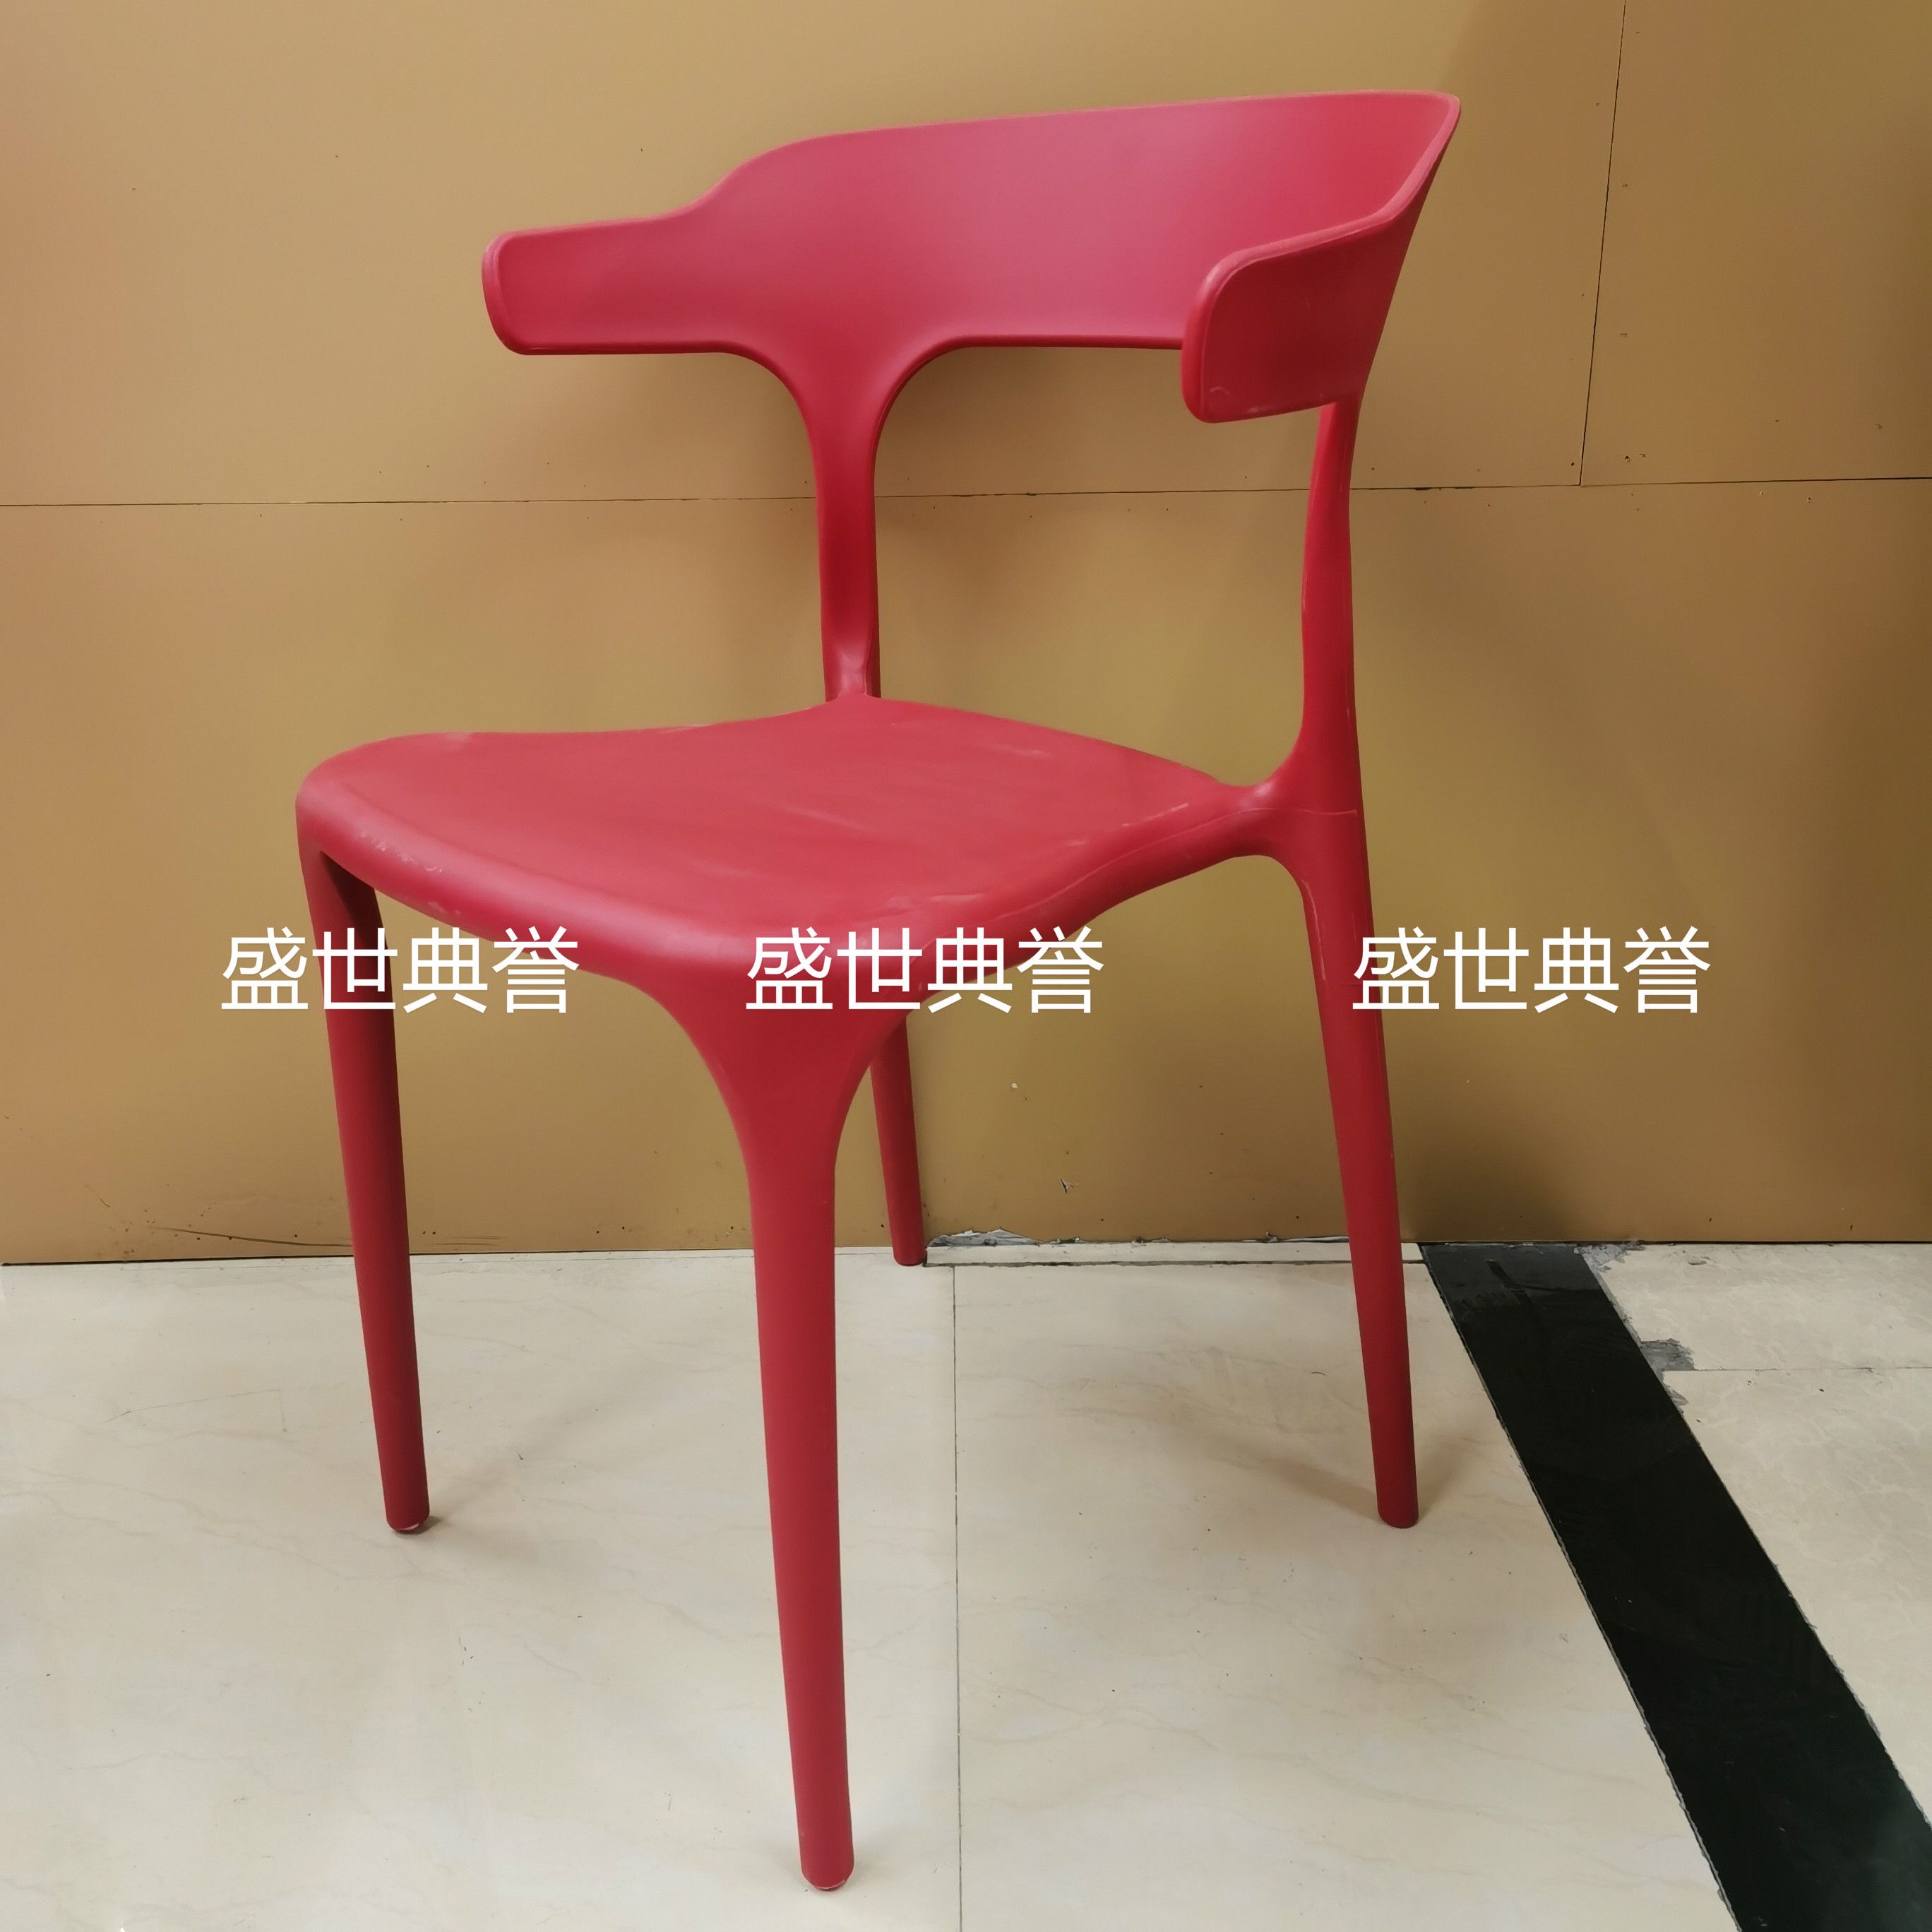 广州外贸批发户外婚礼椅子婚庆塑料折叠椅主题餐厅北欧时尚餐椅图